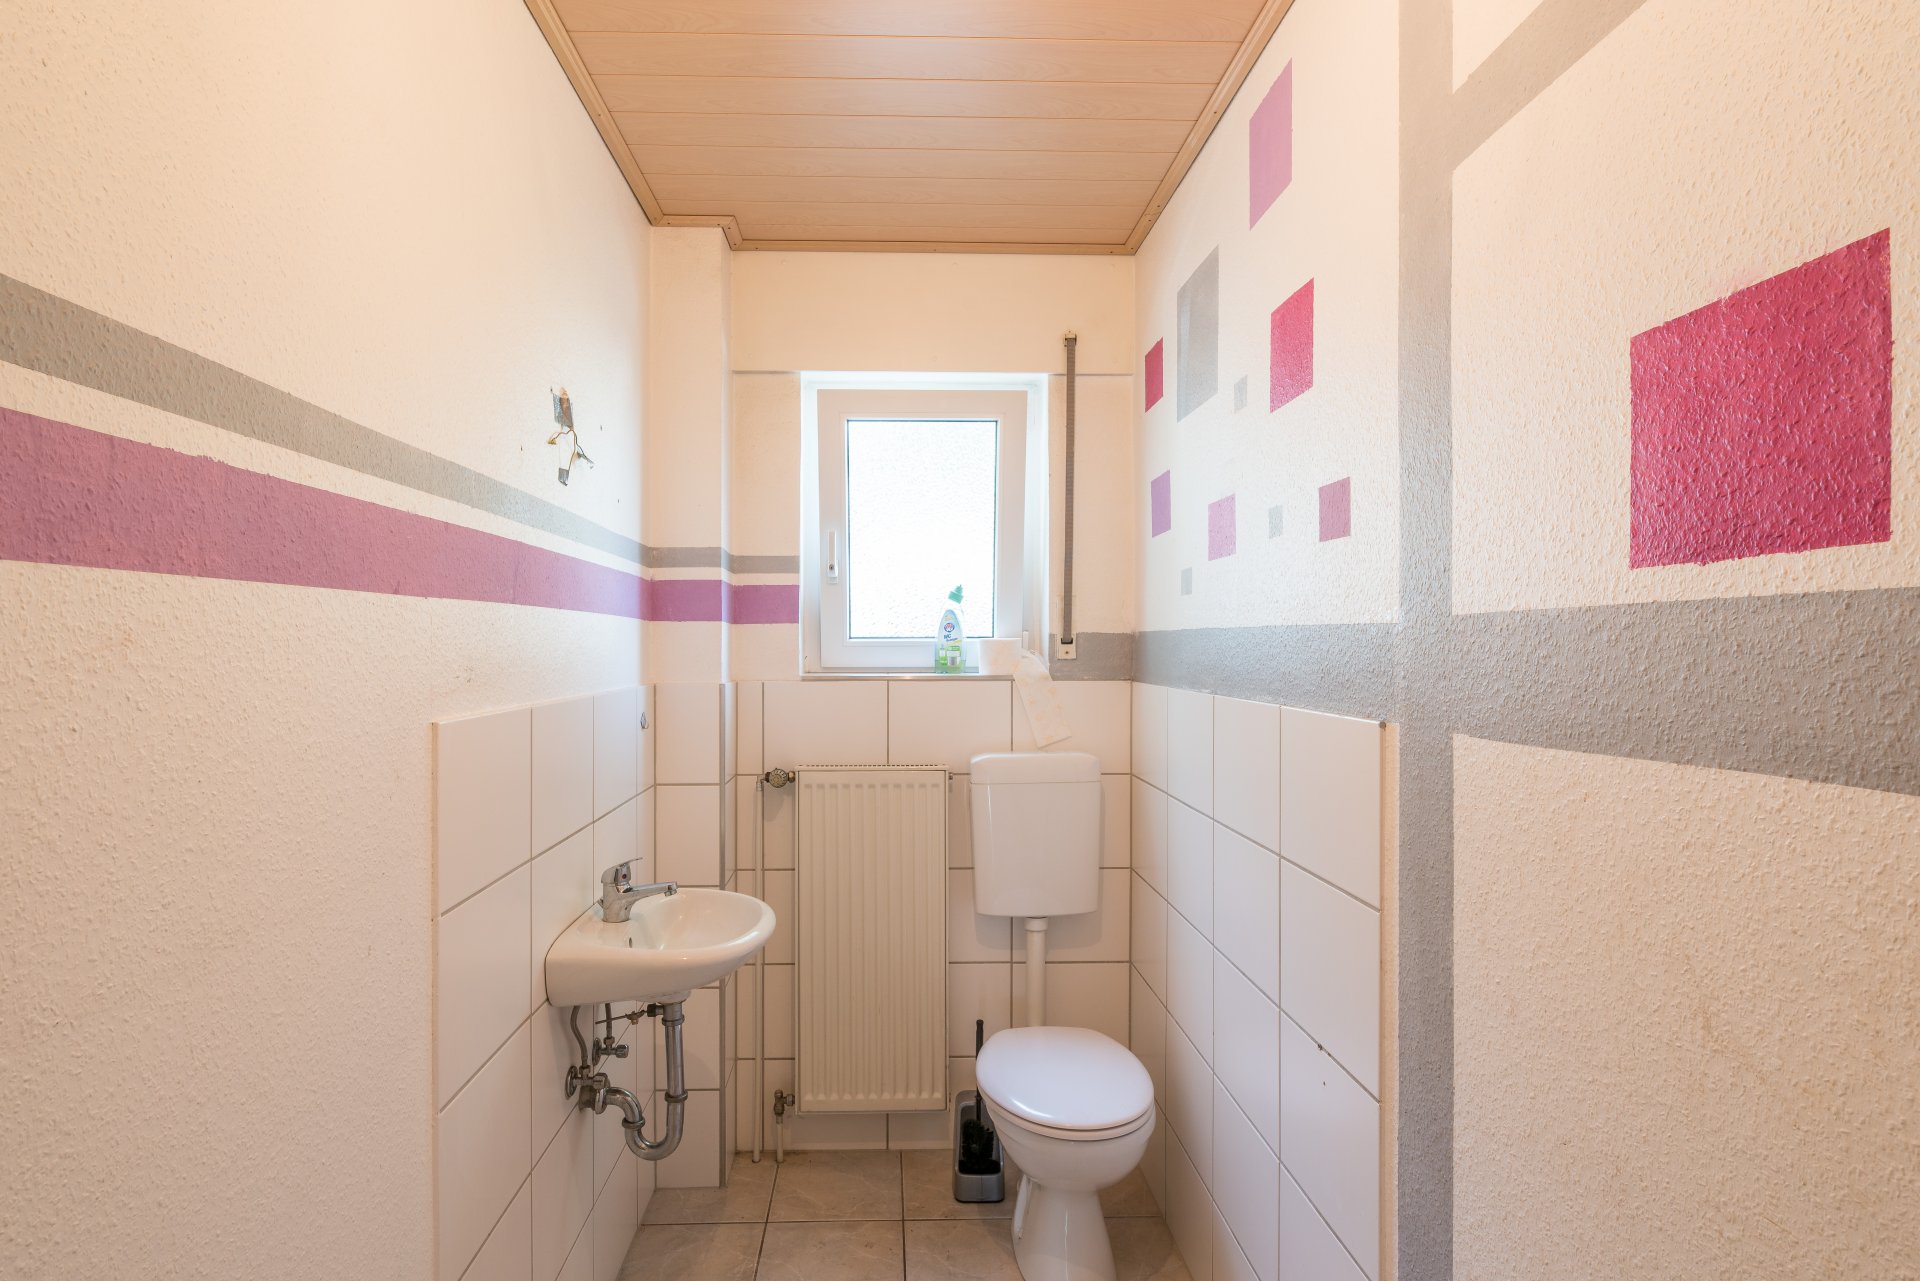 Großer WC Raum, Platz für 2. Bad - Oliver Reifferscheid - Immobilienmakler Darmstadt